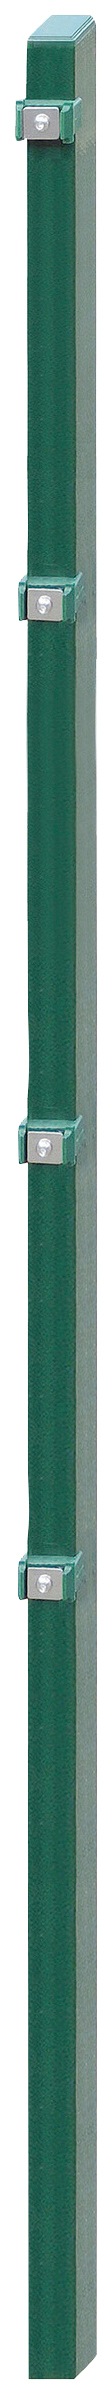 Arvotec Zaunpfosten "EXCLUSIVE 160", 6x4x220 cm für Mattenhöhe 160 cm, zum günstig online kaufen